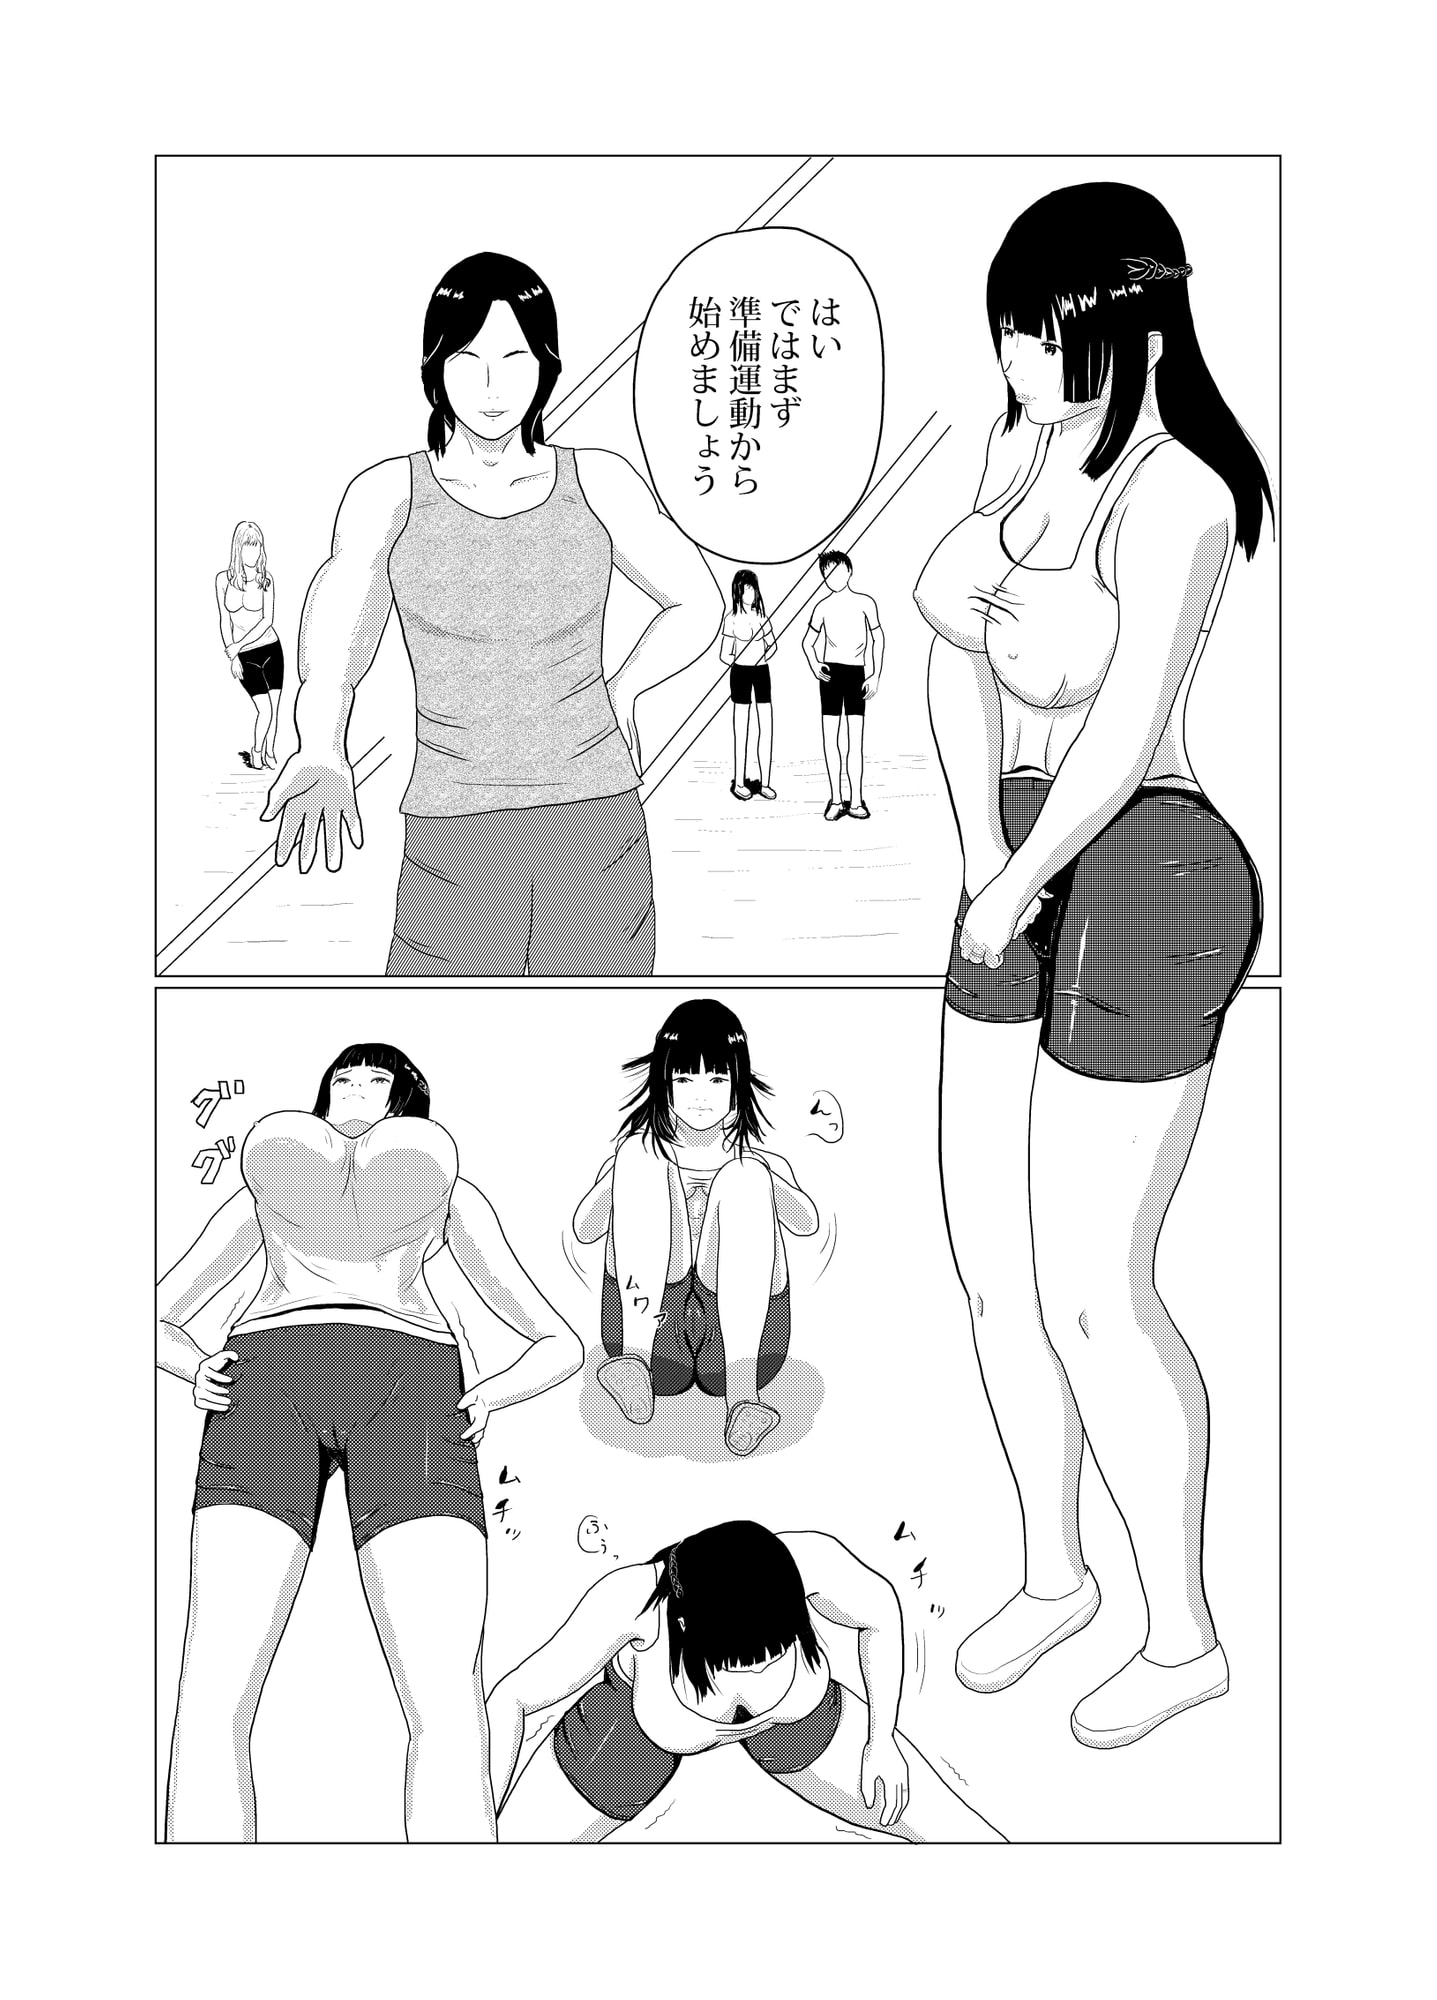 Sexercise with Kotoko